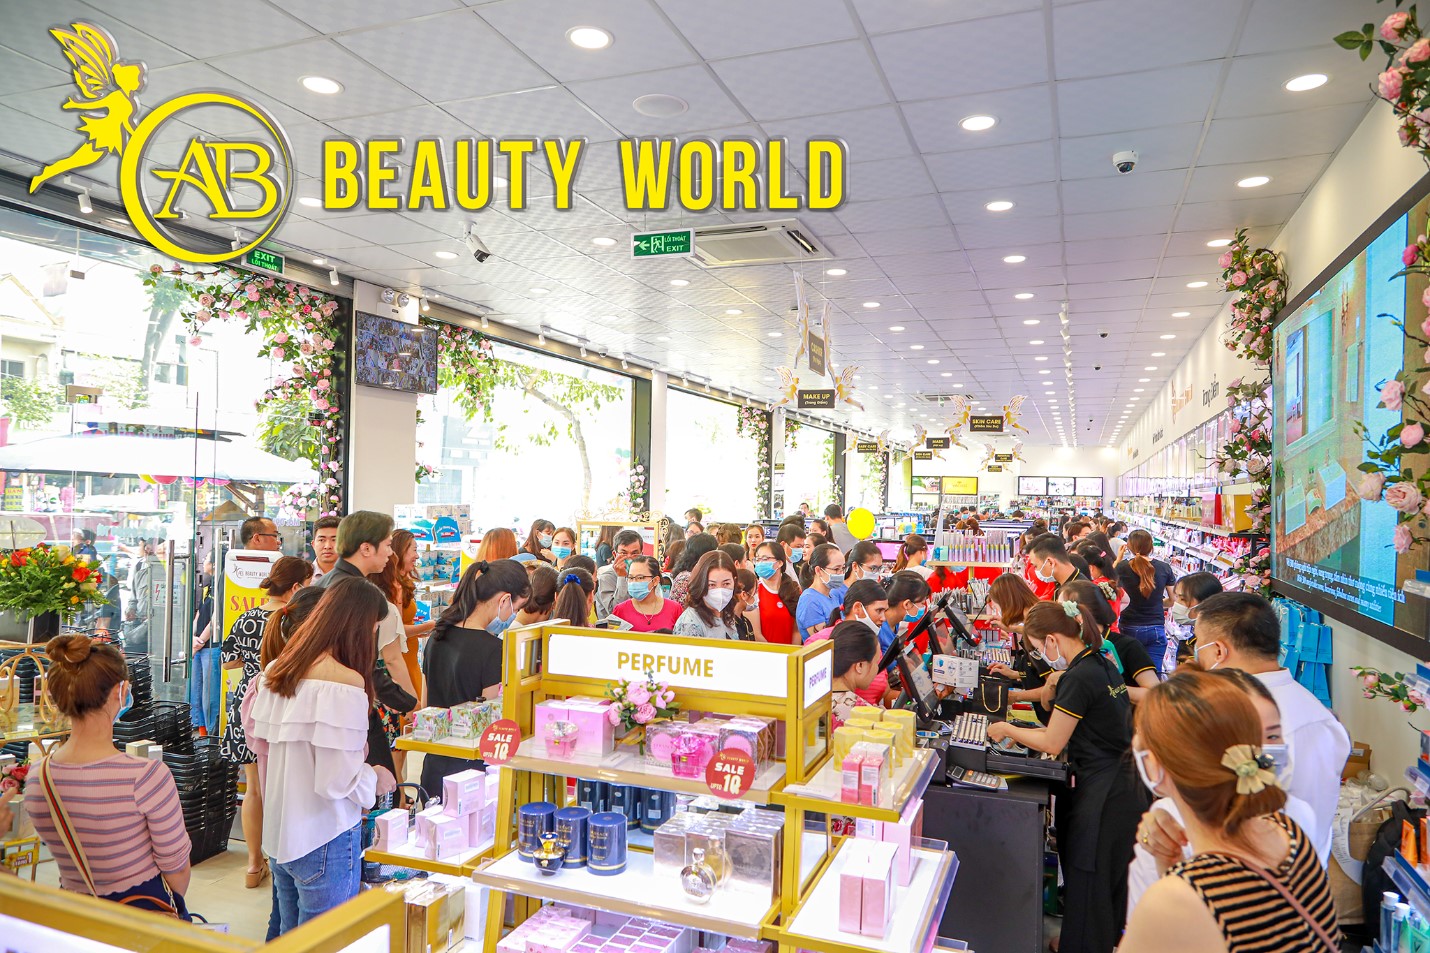 AB Beauty World 5 AB Beauty World khai trương chi nhánh mới tại Bình Tân, tổng quà tặng lên đến 1 tỷ đồng